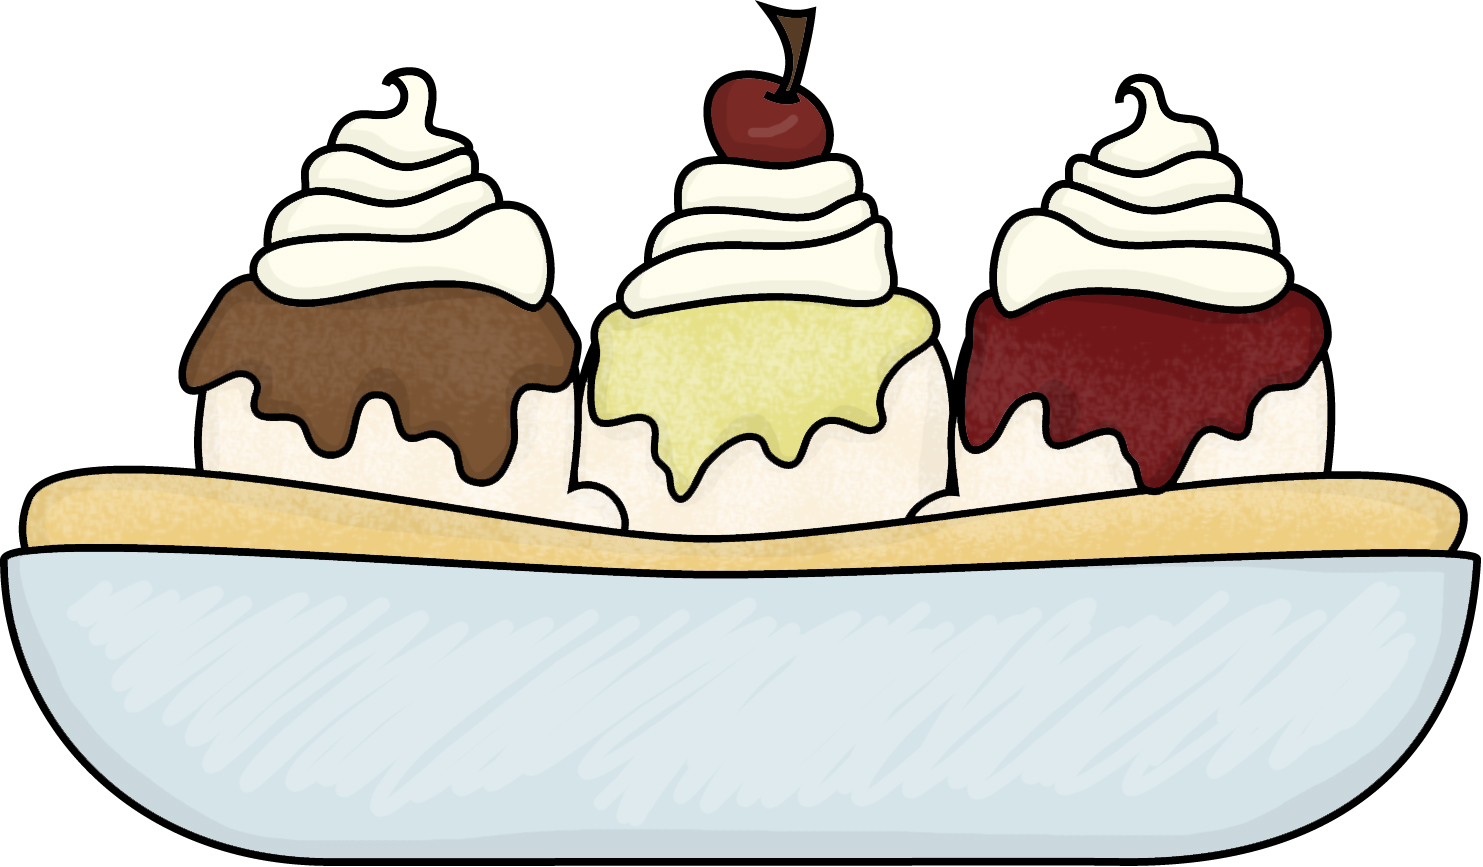 ice cream sundae bar clipart - photo #30